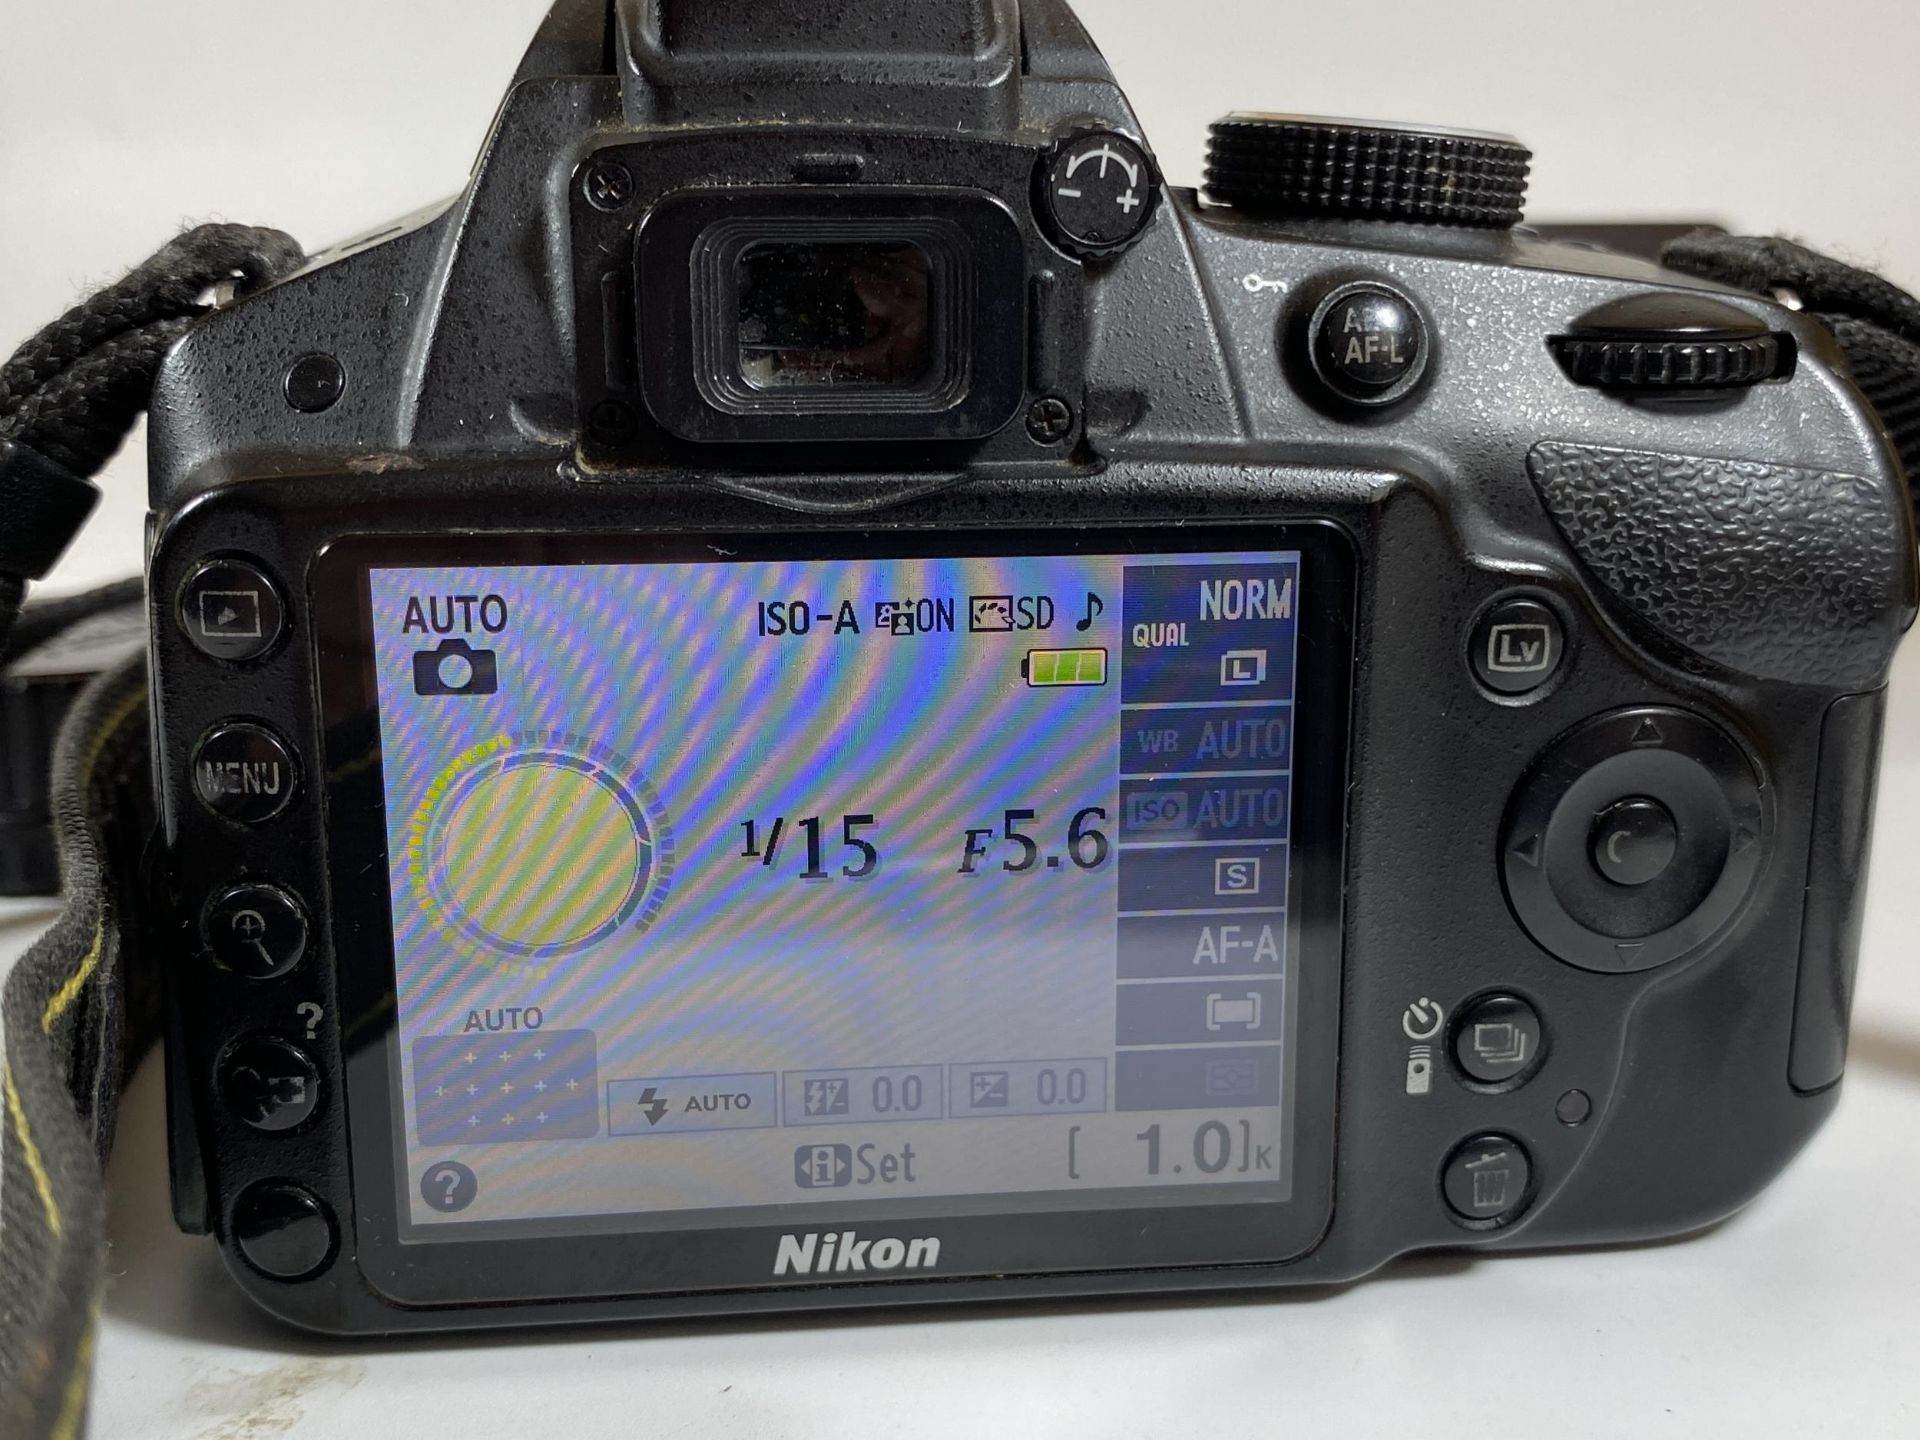 A NIKON D3200 DIGITAL SLR CAMERA WITH AF-S DX NIKKOR 18-55MM 1:3.5-5.6 G VR LENS, CHARGER, - Image 5 of 5